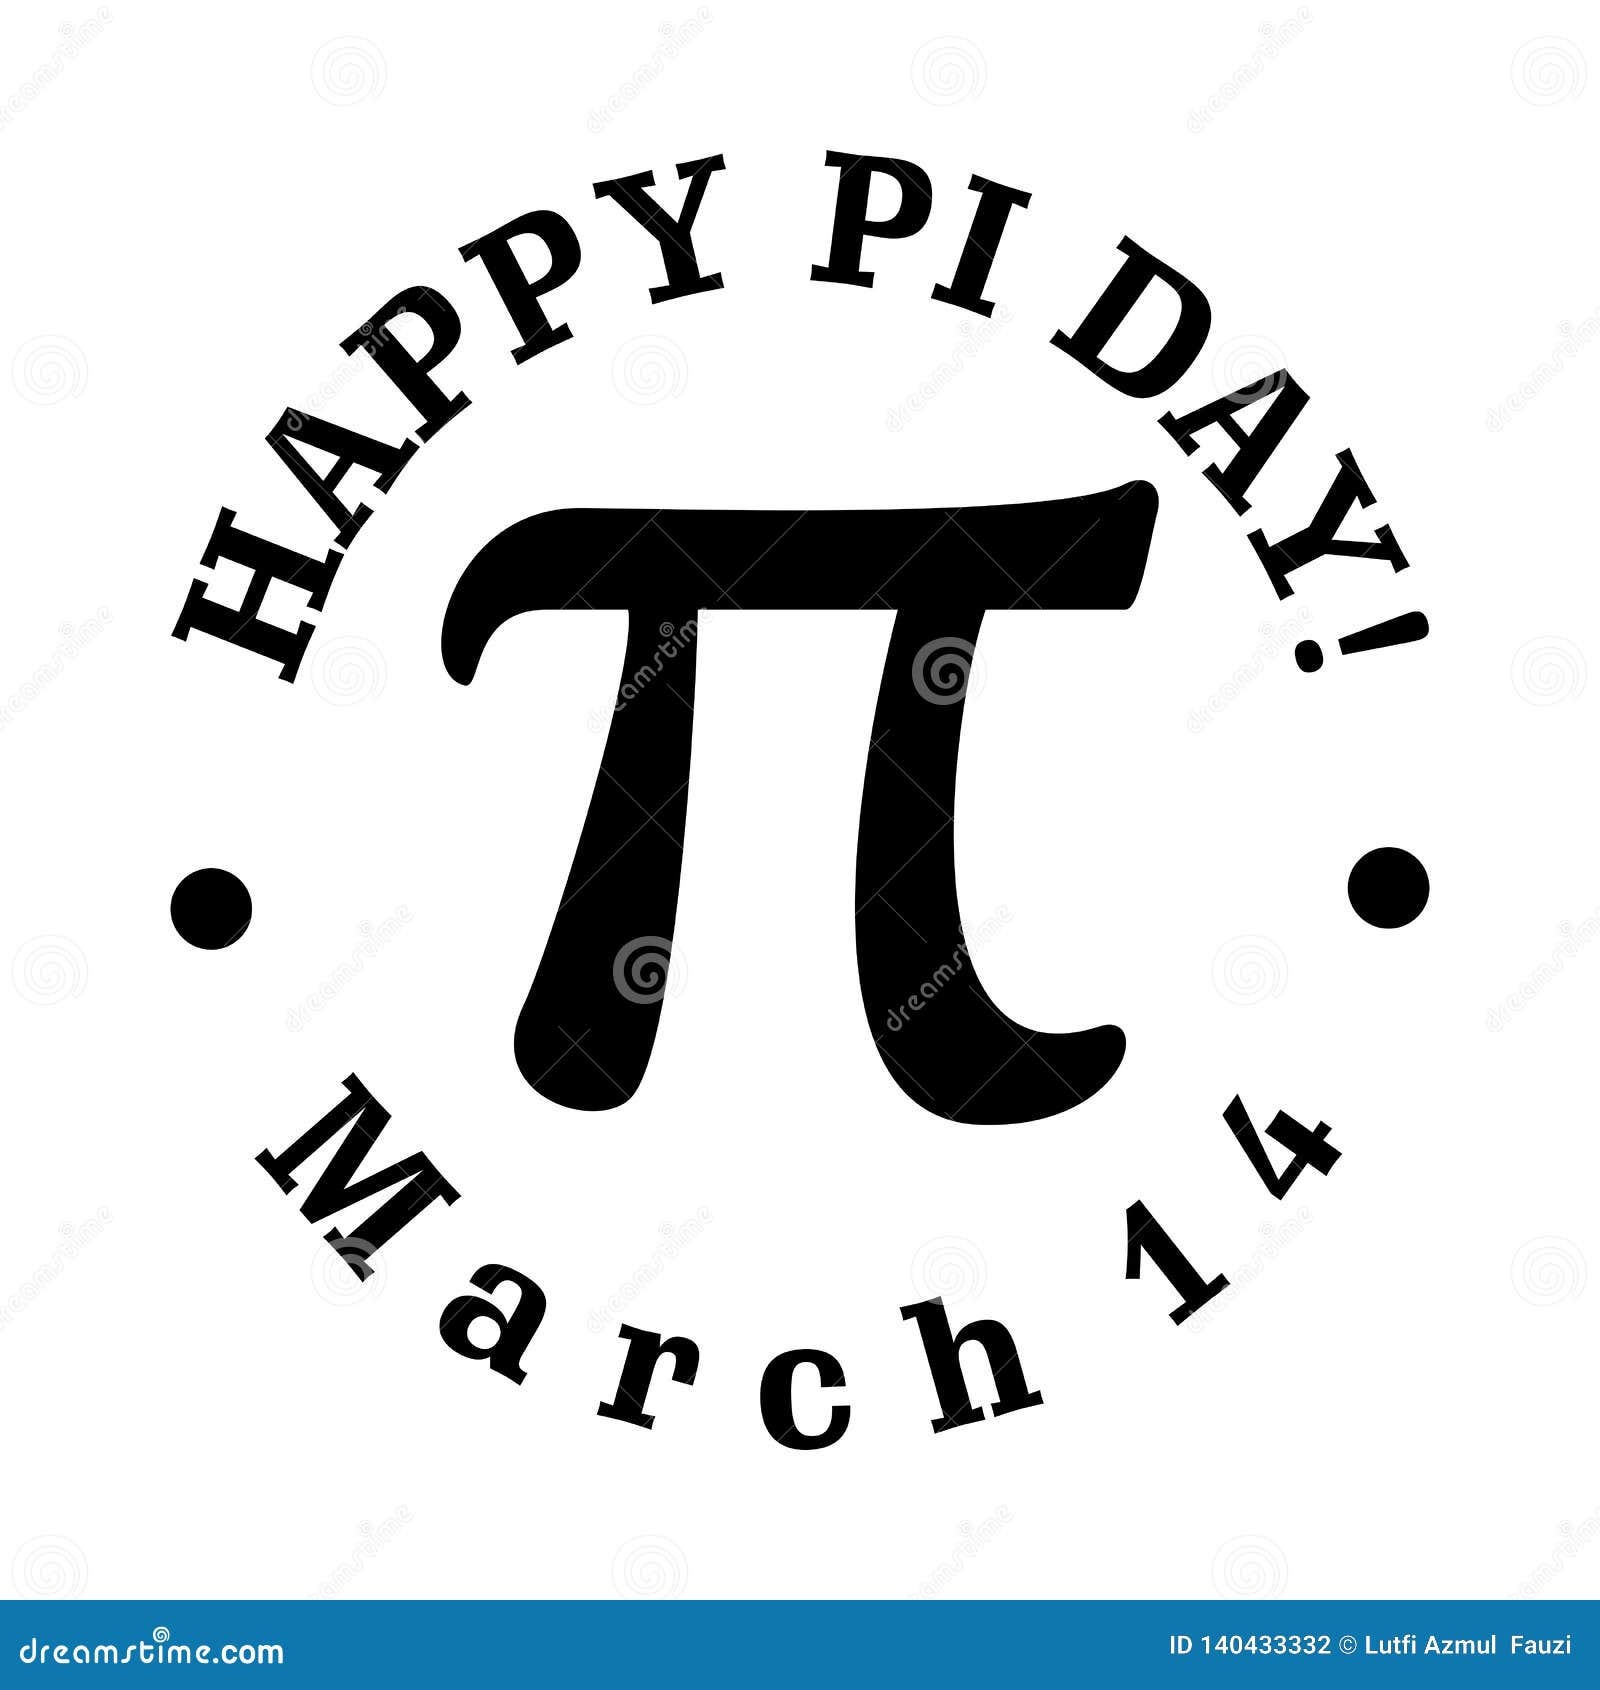 Celebrate Pi Day. Happy Pi Day Vector Stock Vector Illustration of